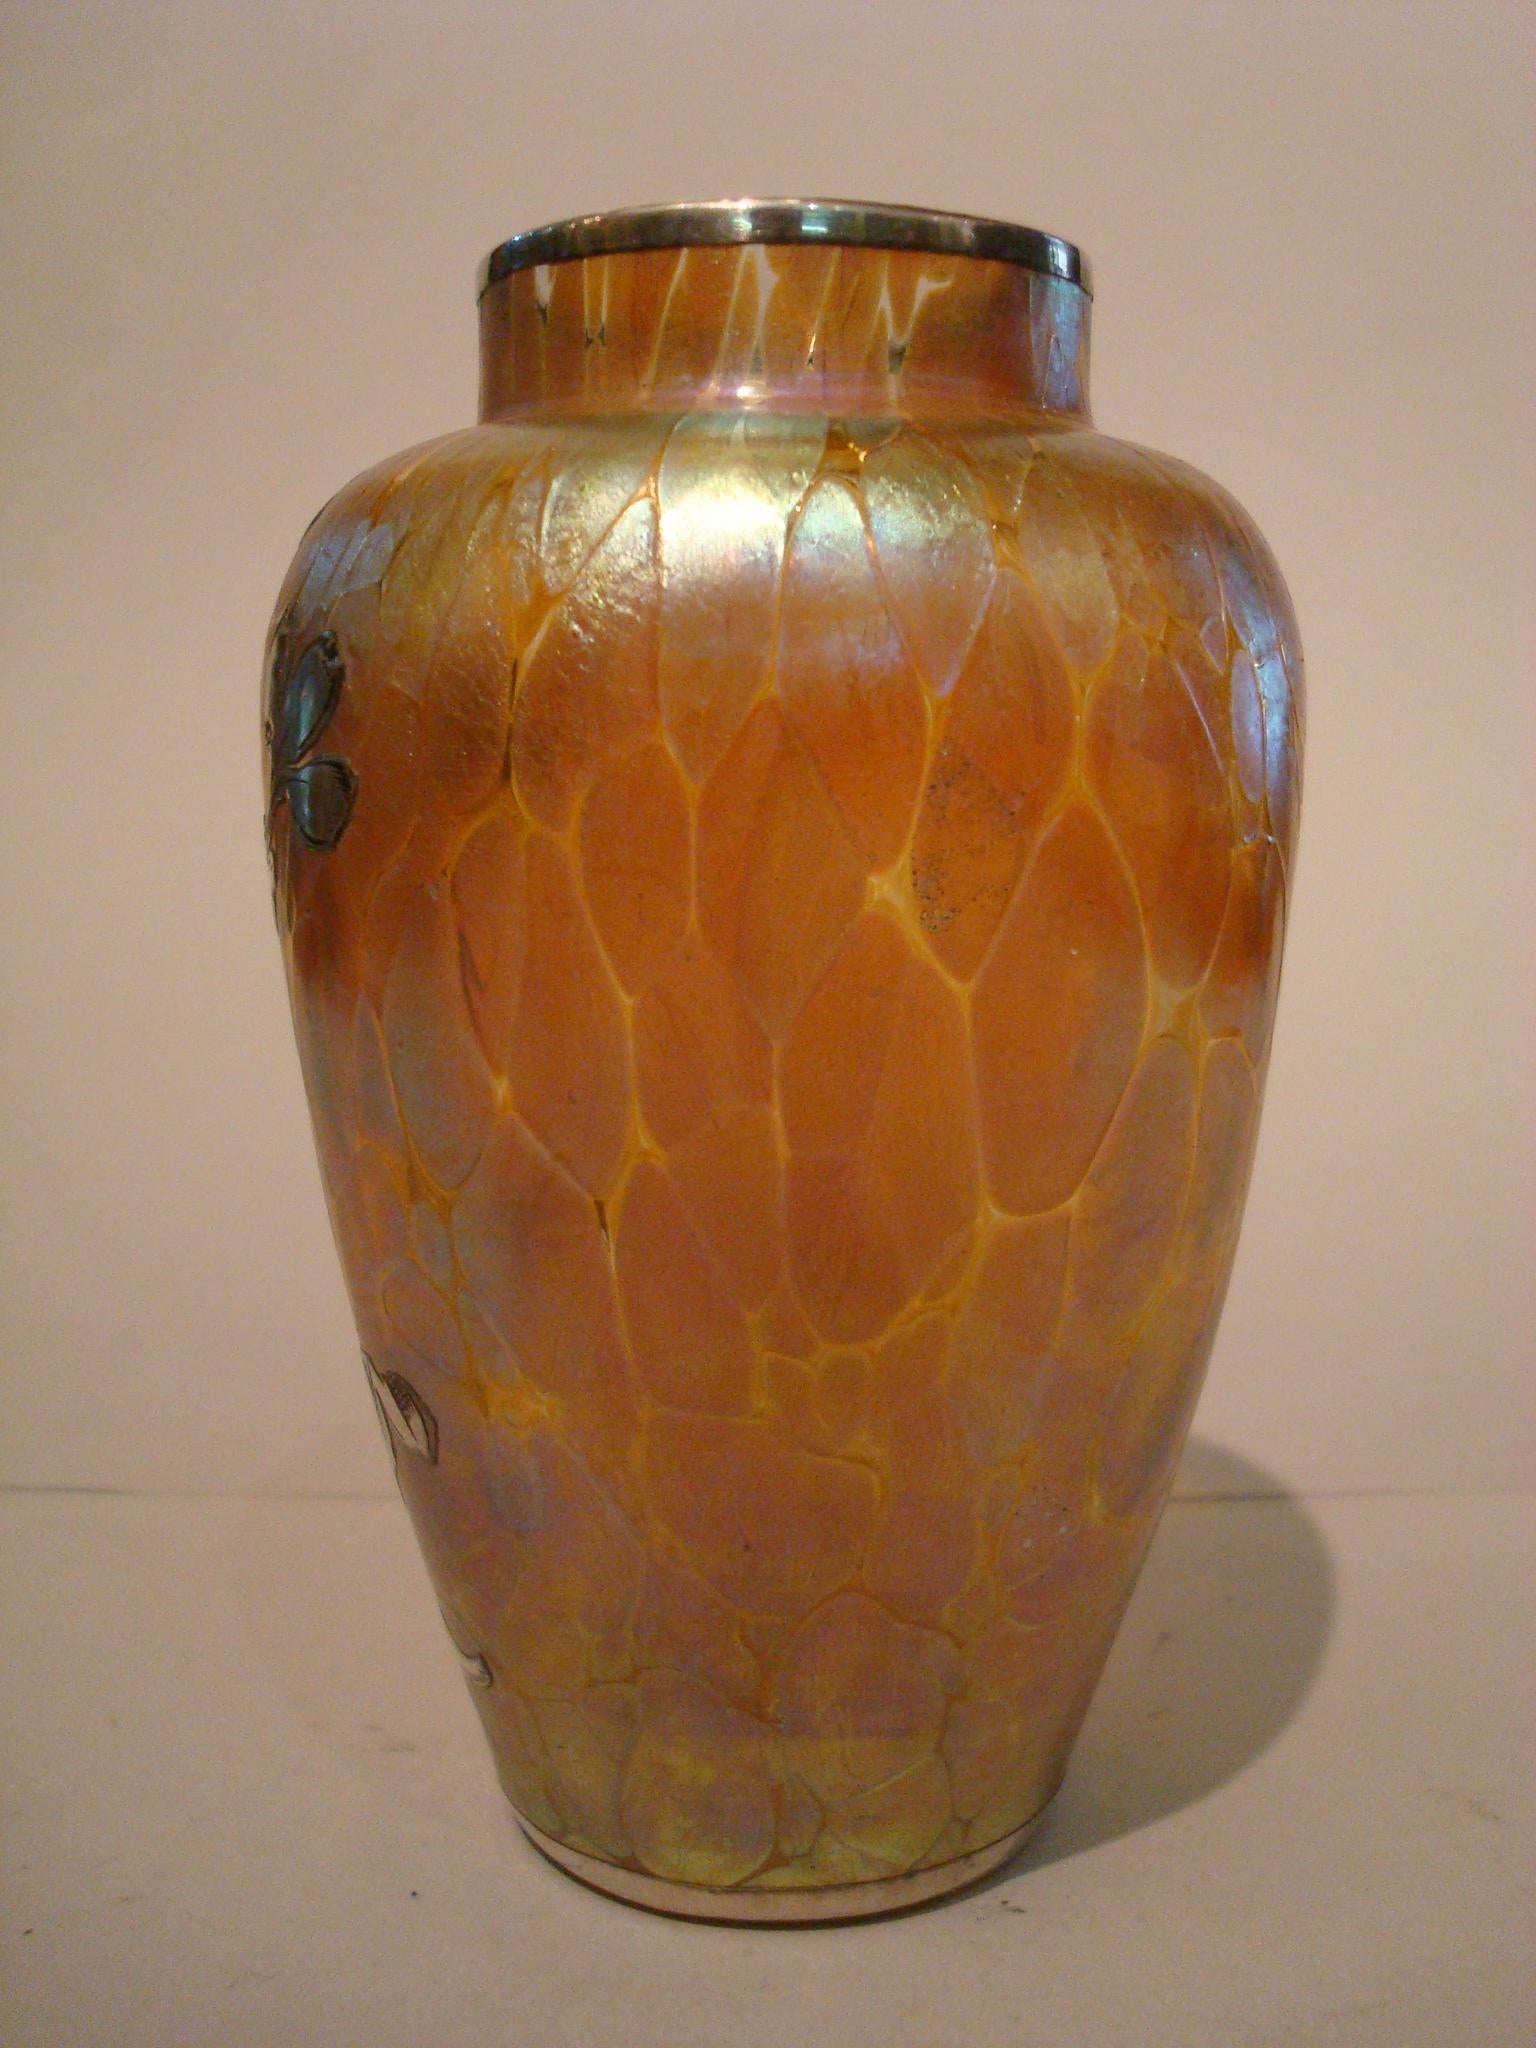 Vase en verre de style Art nouveau, avec un revêtement en argent gravé, fabriqué par le célèbre fabricant tchèque Loetz.